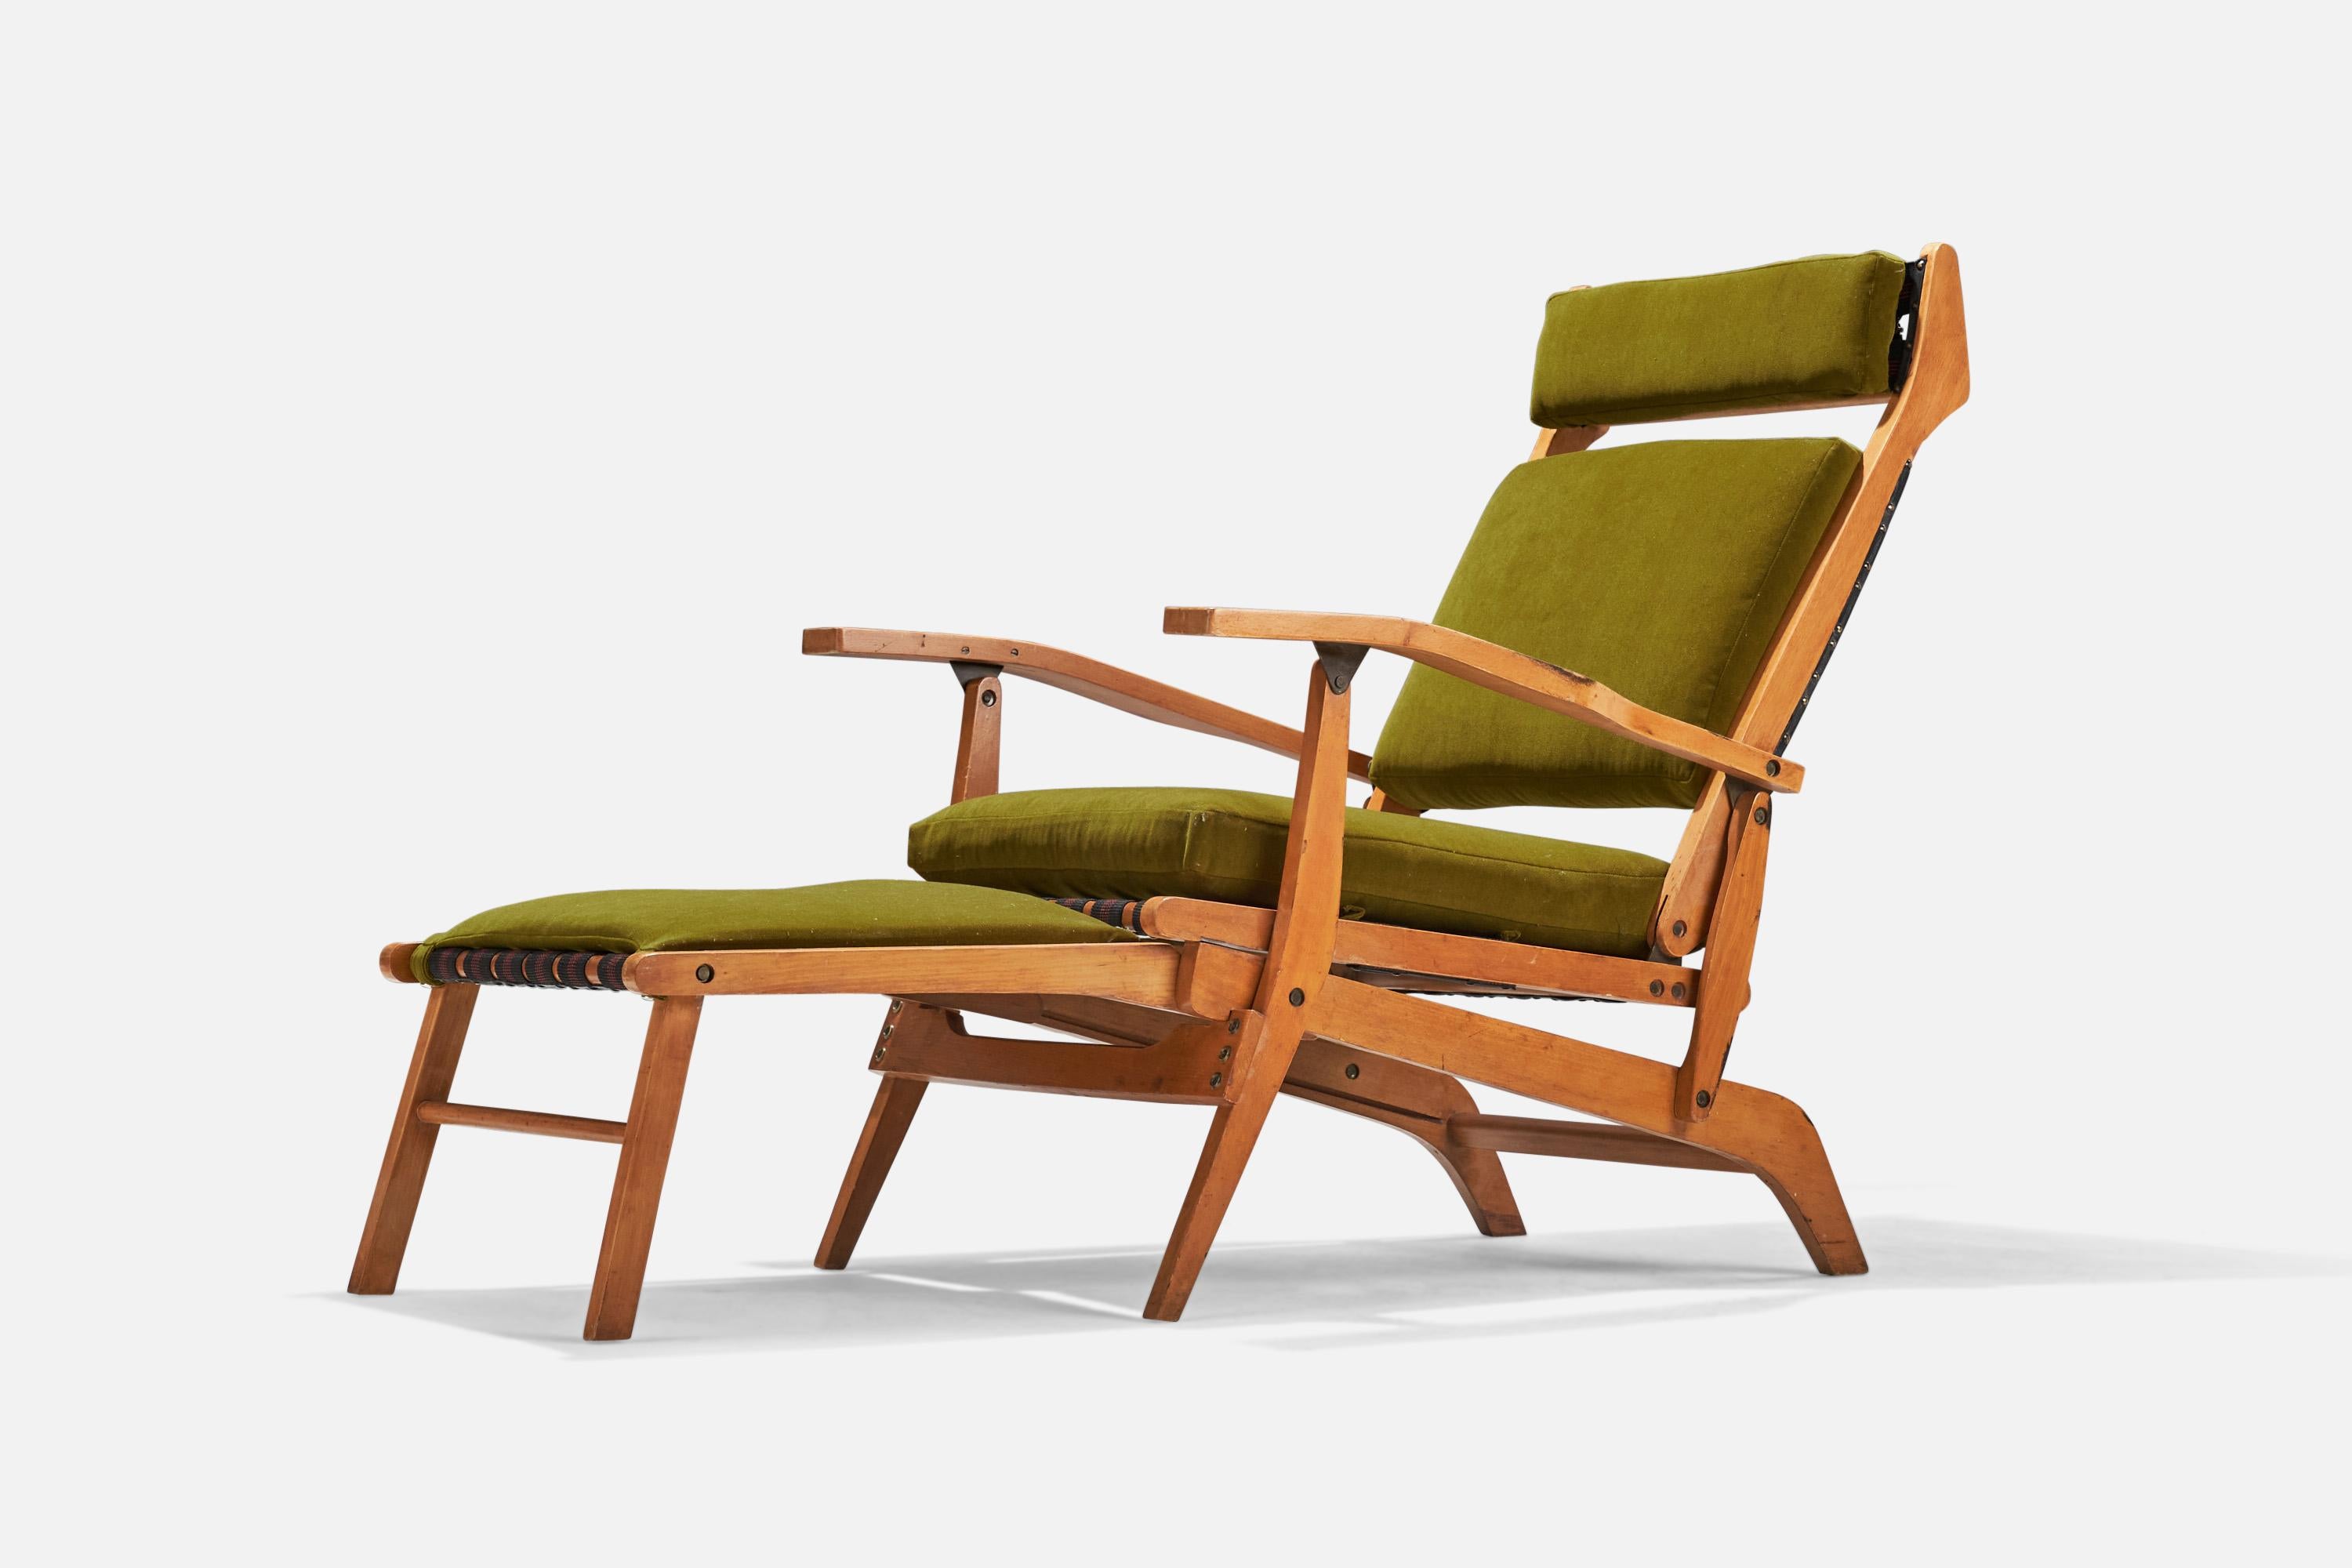 Ein verstellbarer Sessel oder Chaiselongue aus grünem Samt und Buche mit angebrachter Fußstütze, entworfen und hergestellt in Italien, 1950.

Abmessungen variabel, gemessen wie im ersten Bild dargestellt.